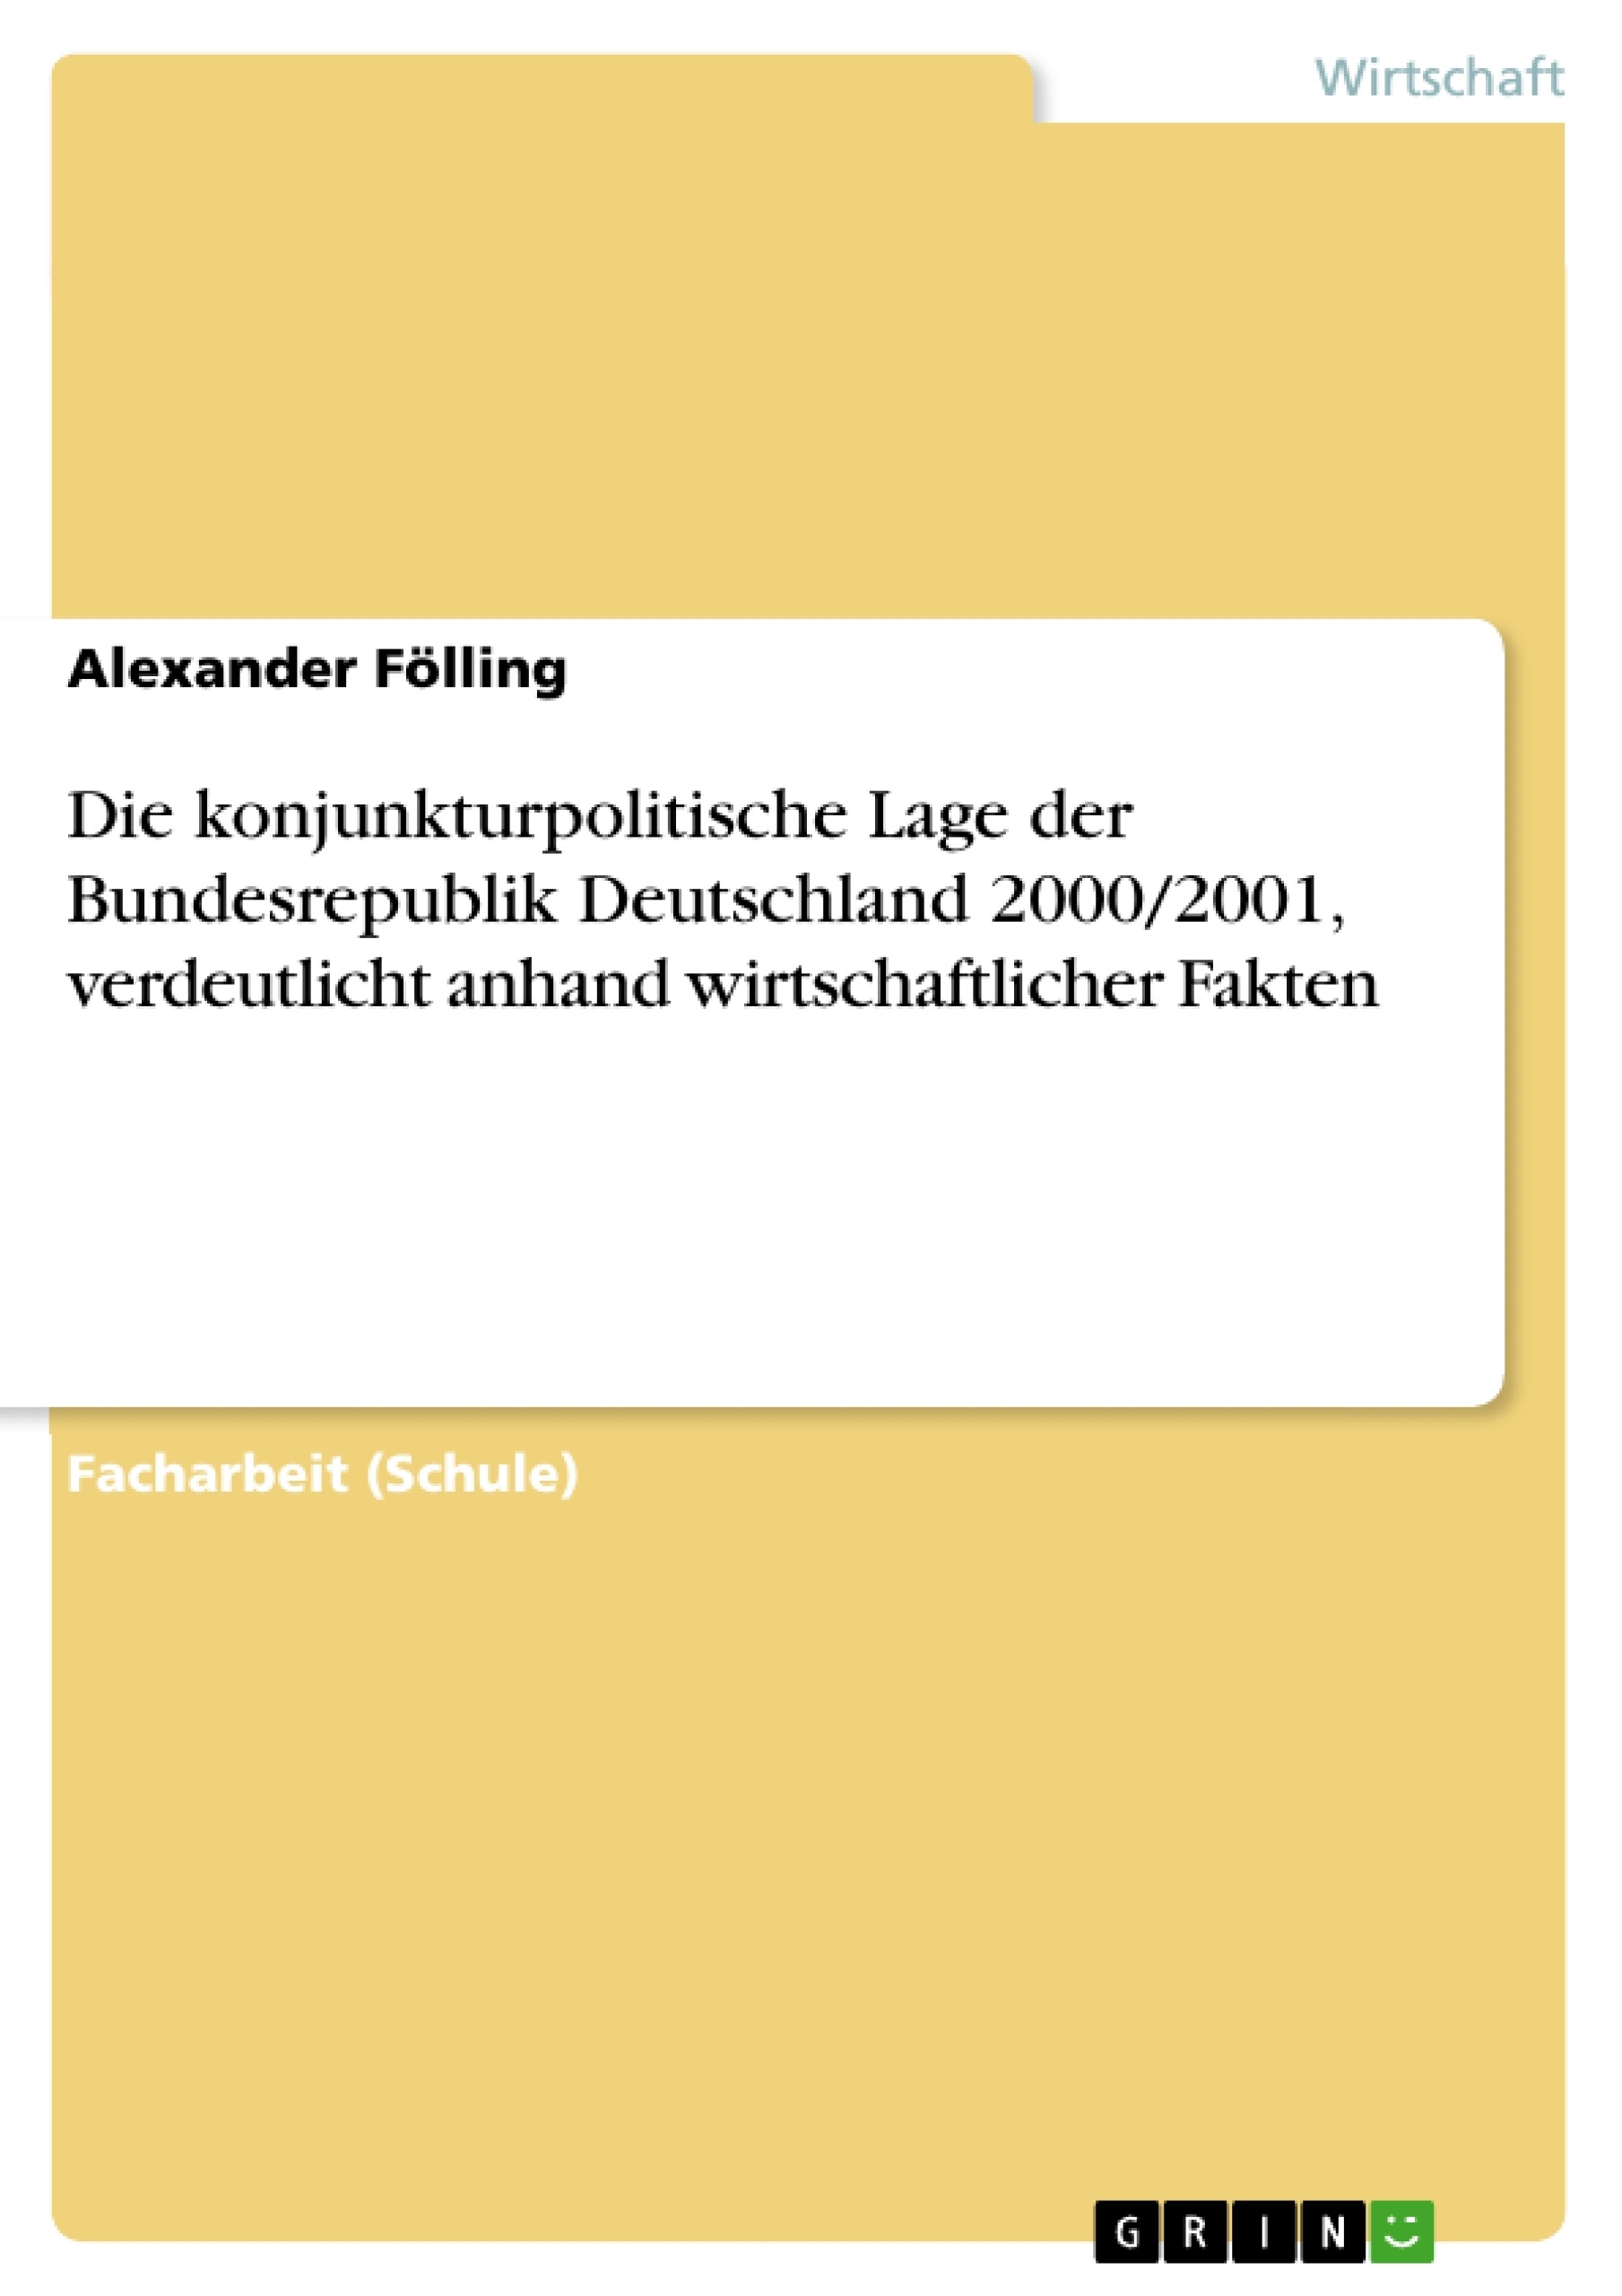 Título: Die konjunkturpolitische Lage der Bundesrepublik Deutschland 2000/2001, verdeutlicht anhand wirtschaftlicher Fakten